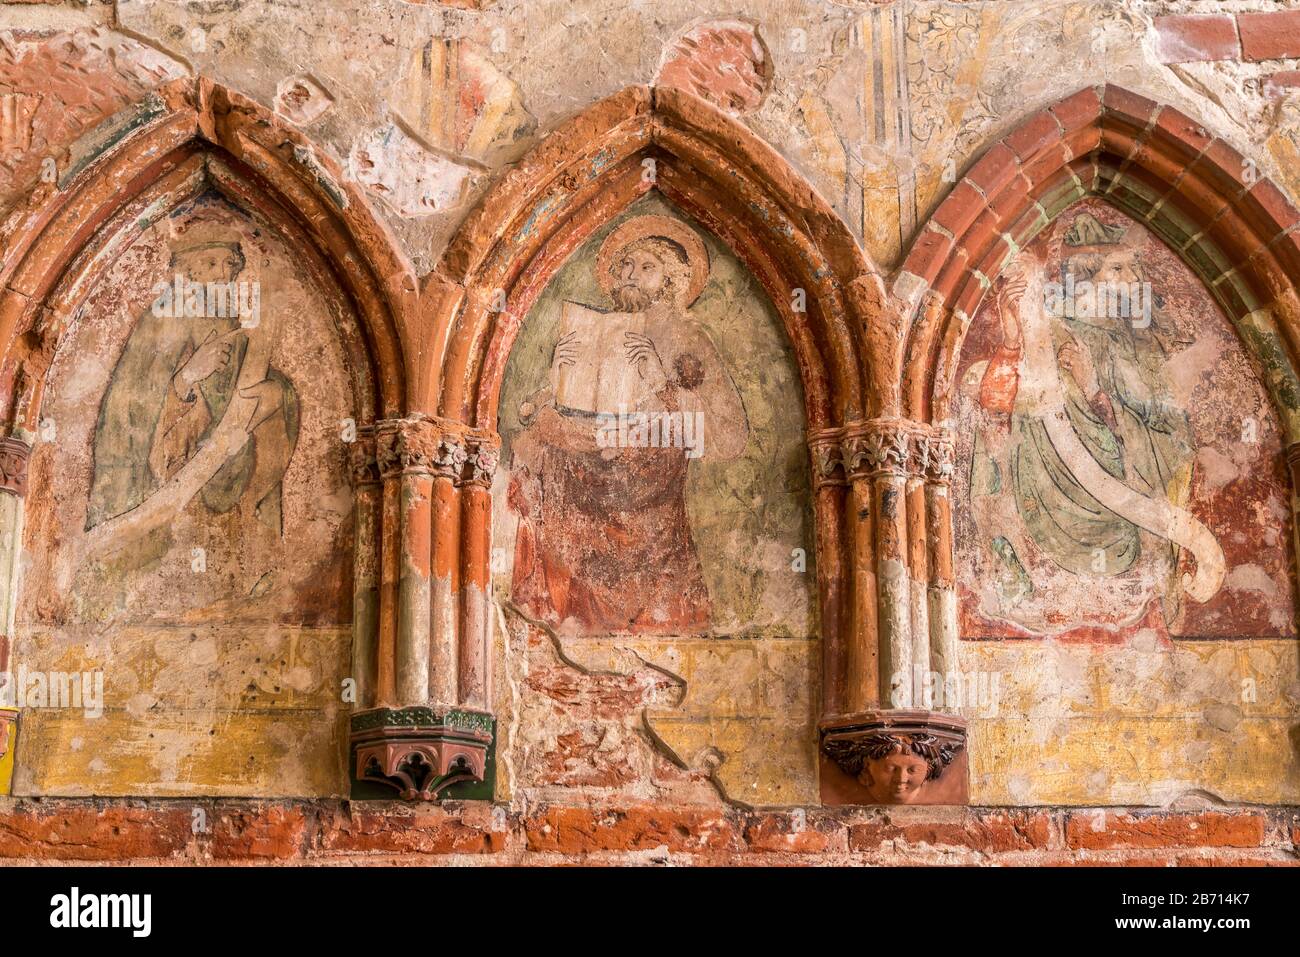 Wandbild in der Kapelle der Marienburg, mittelalterliche Ordensburg des Deutschen Ordens am Fluss Nogat, Malbork, Polen, Europa  |  Wall painting, Mal Stock Photo